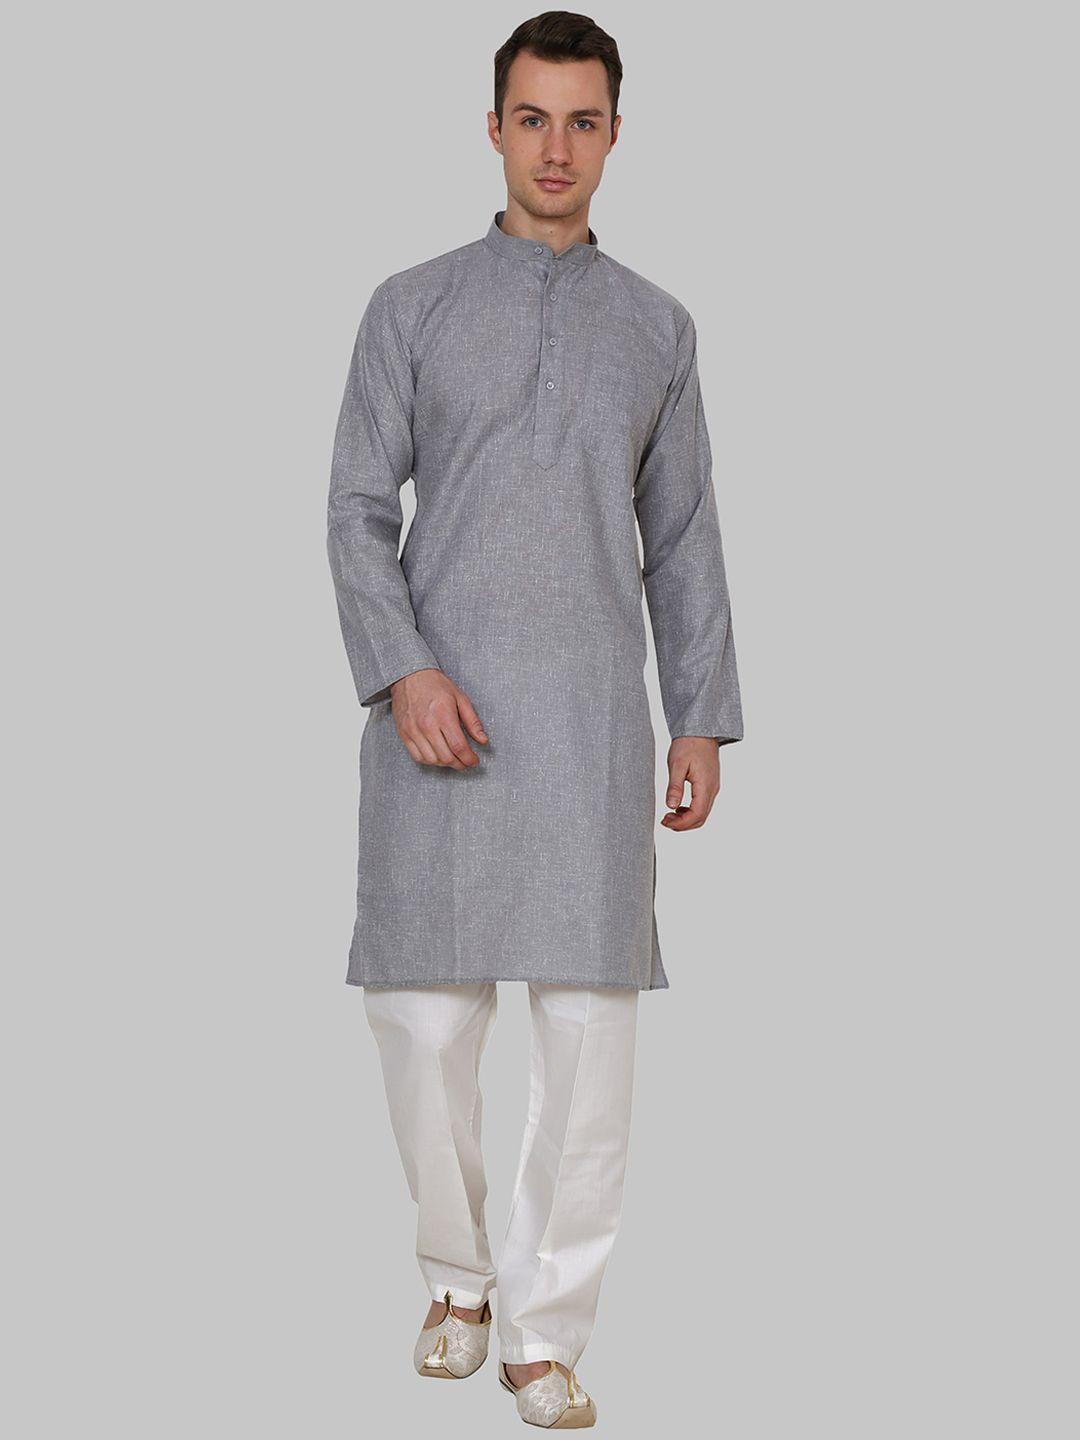 royal kurta men grey & white kurta with pyjamas